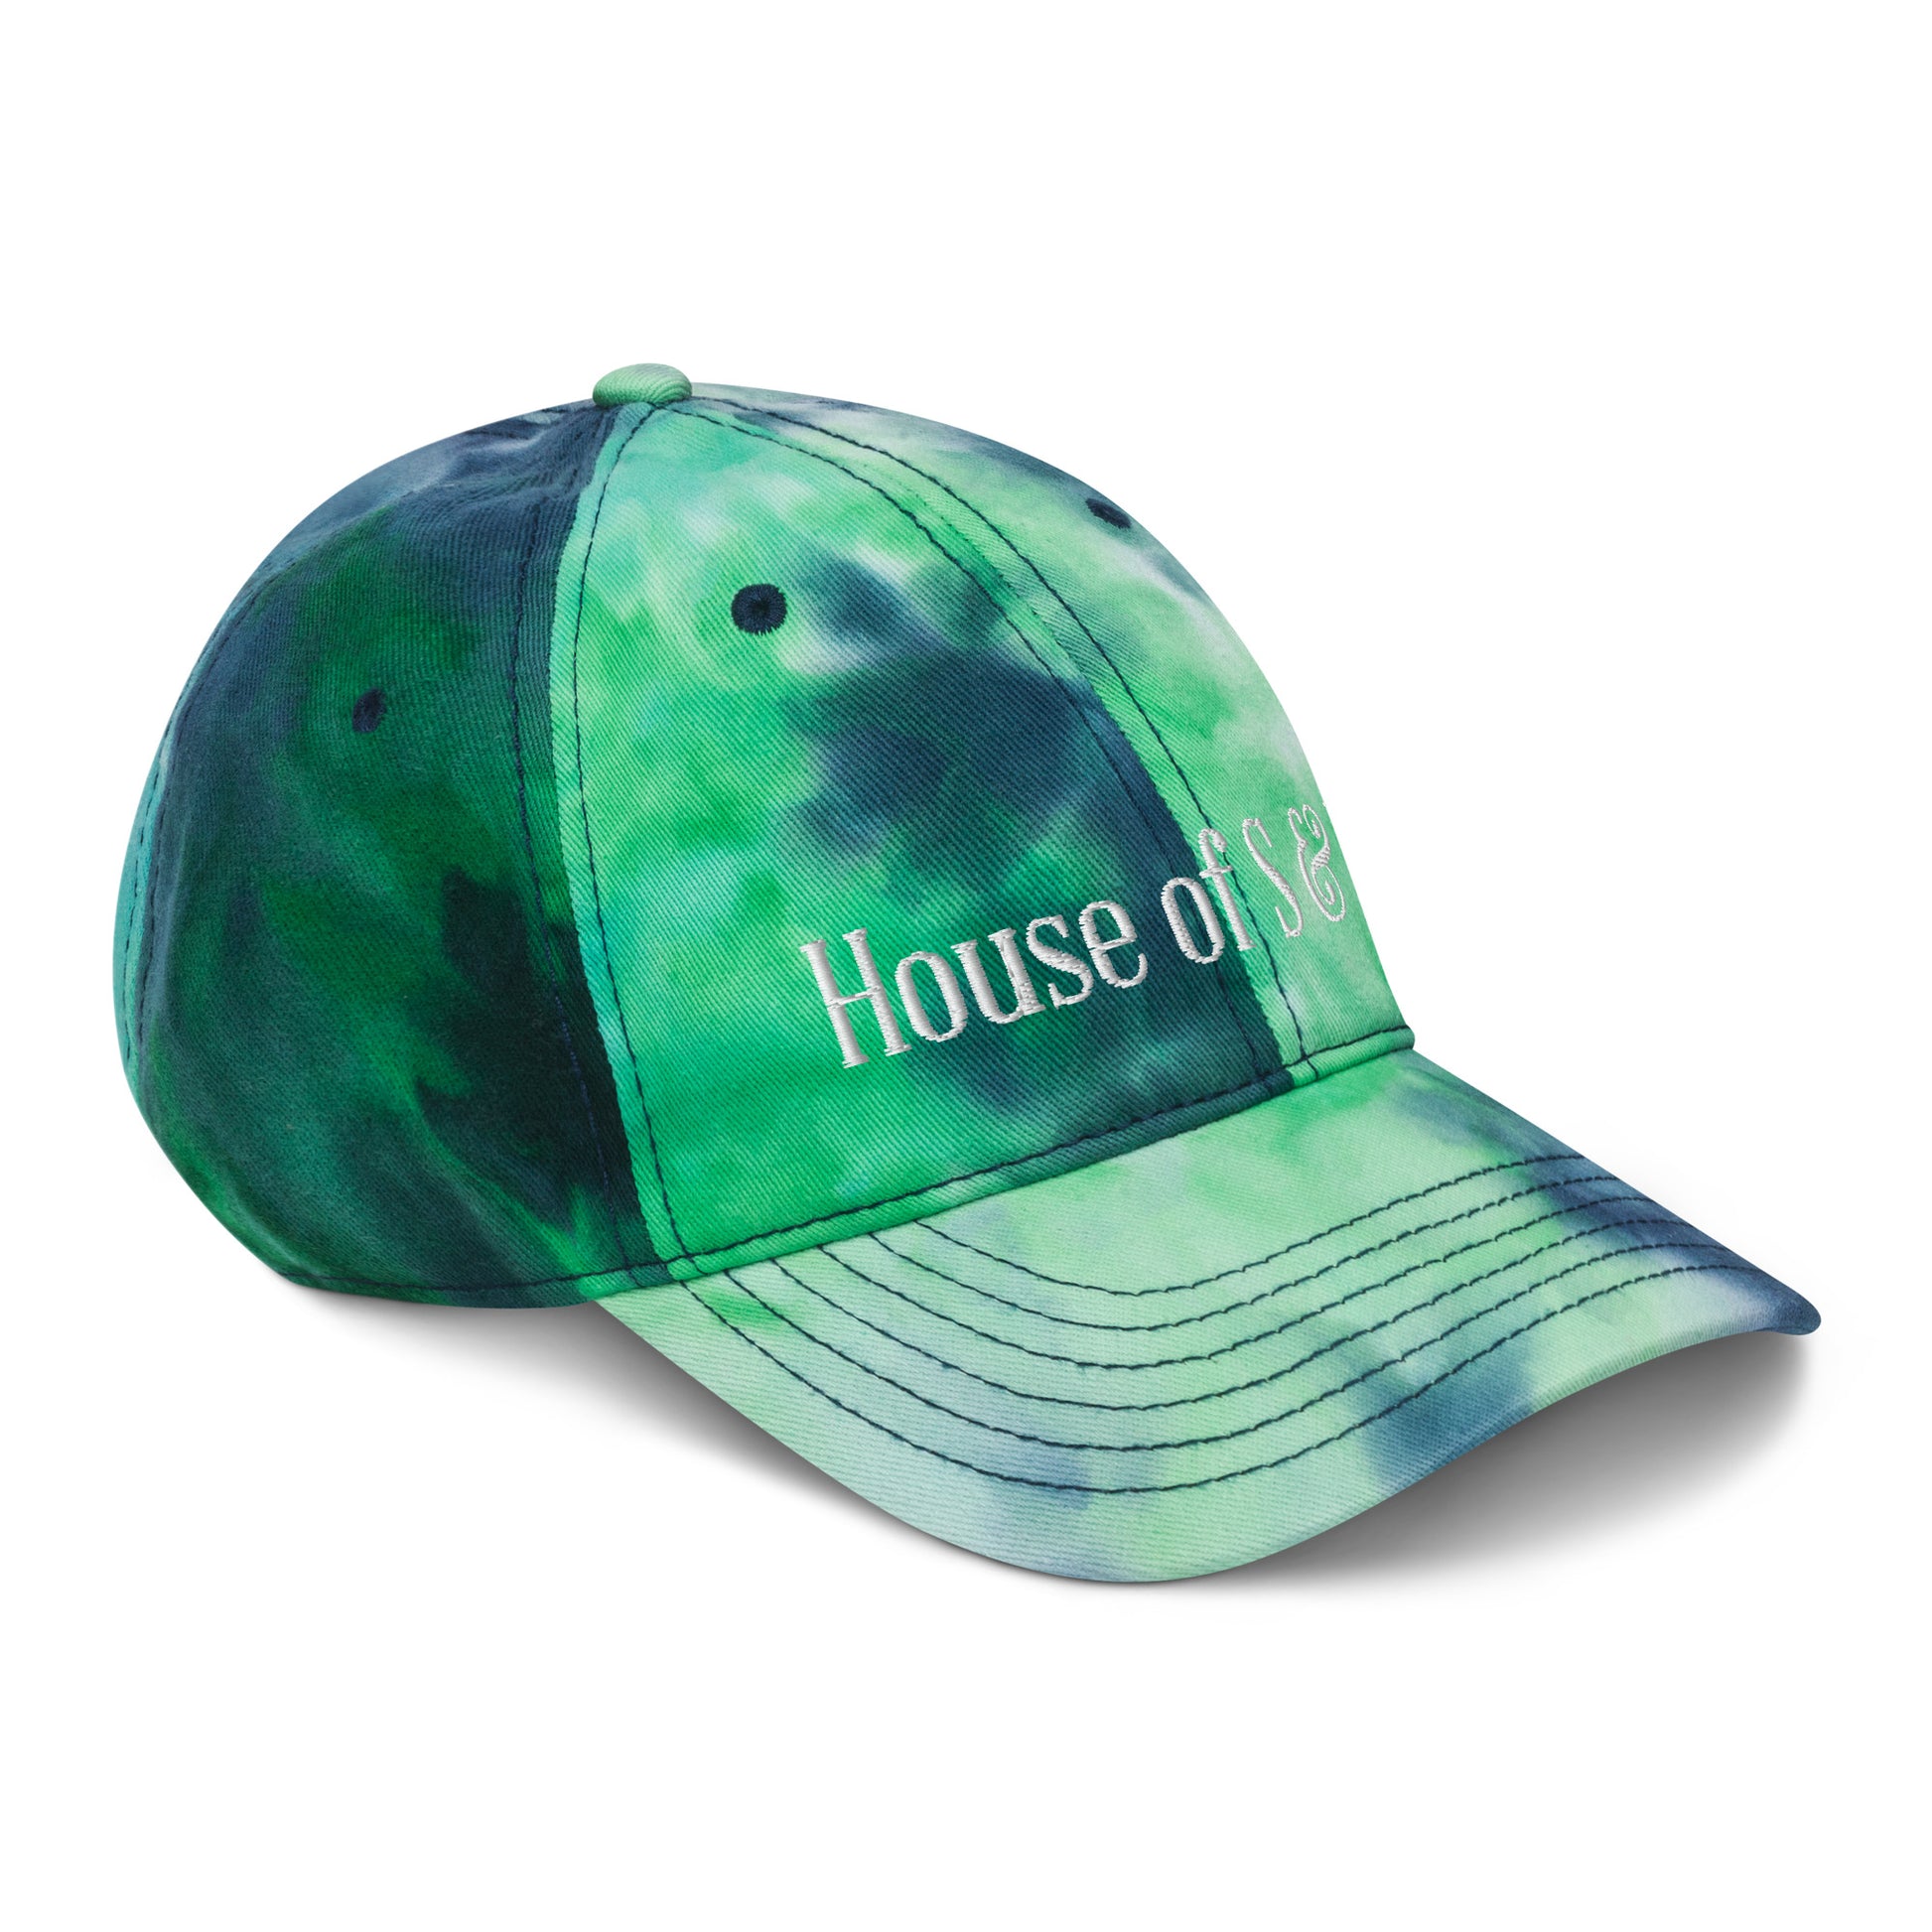 Tie dye hat - House of S & N